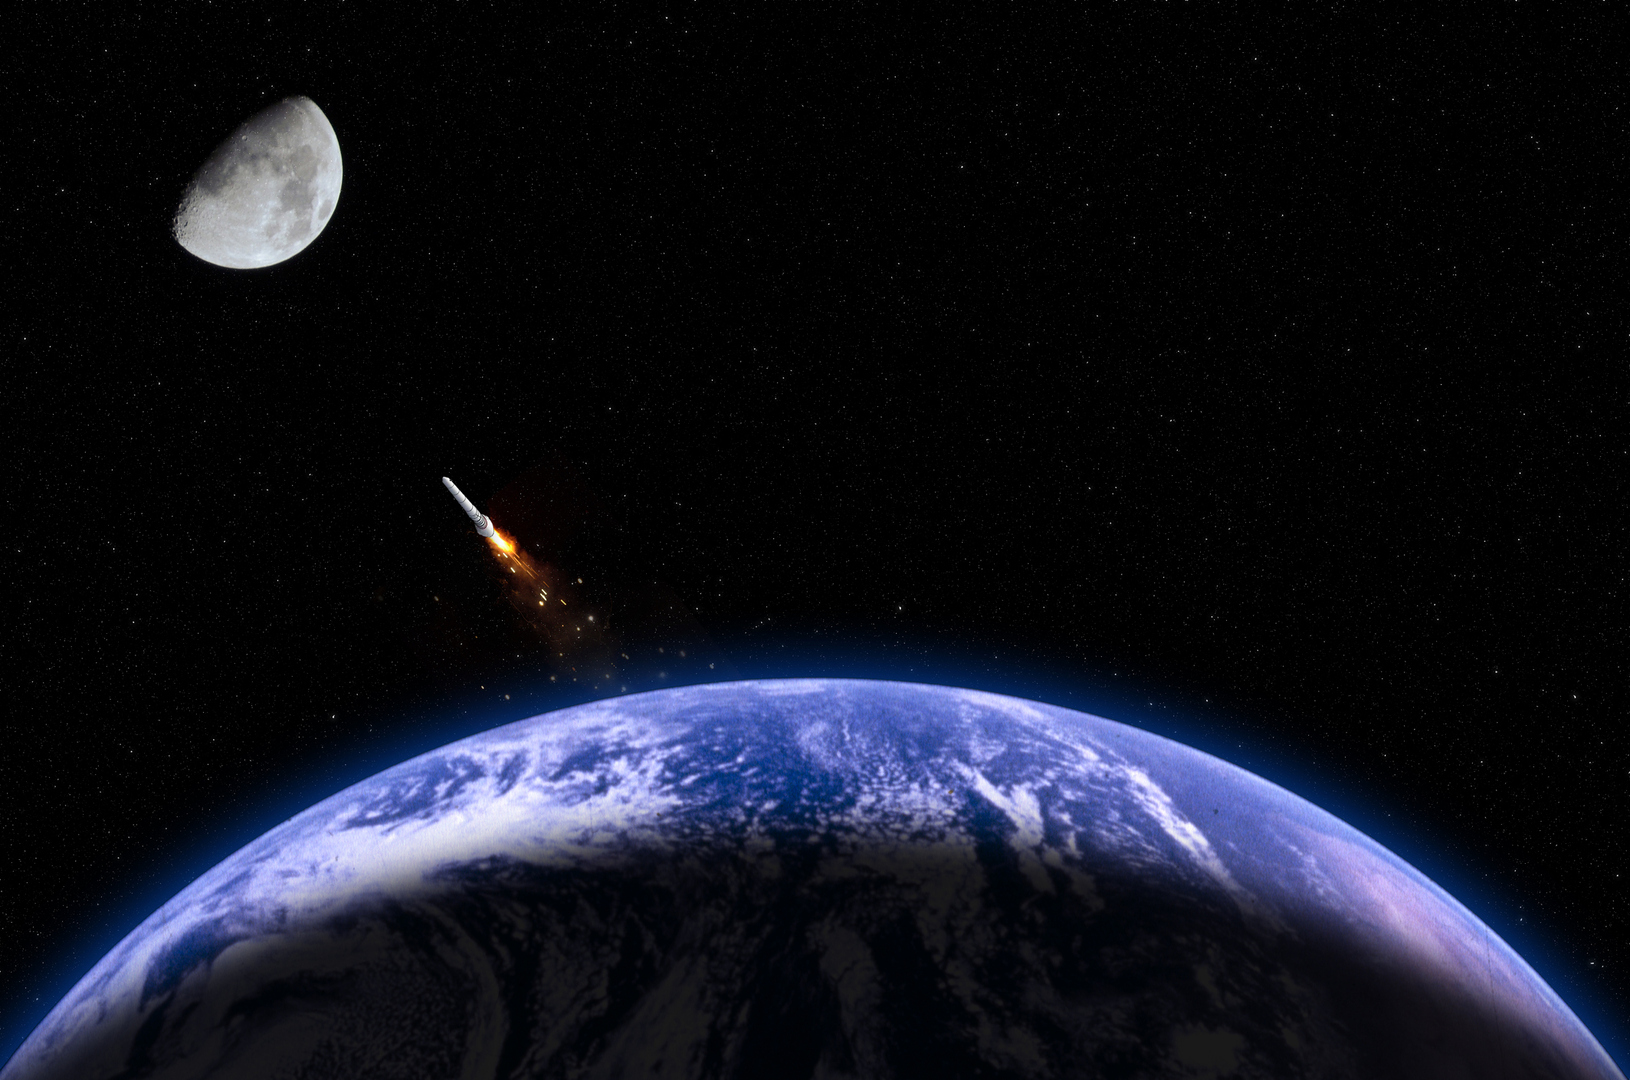 القمر بانتظار اصطدام صاروخ مجهول الهوية يزن 3 أطنان على سطحه بسرعة 9300 كيلومتر/ الساعة